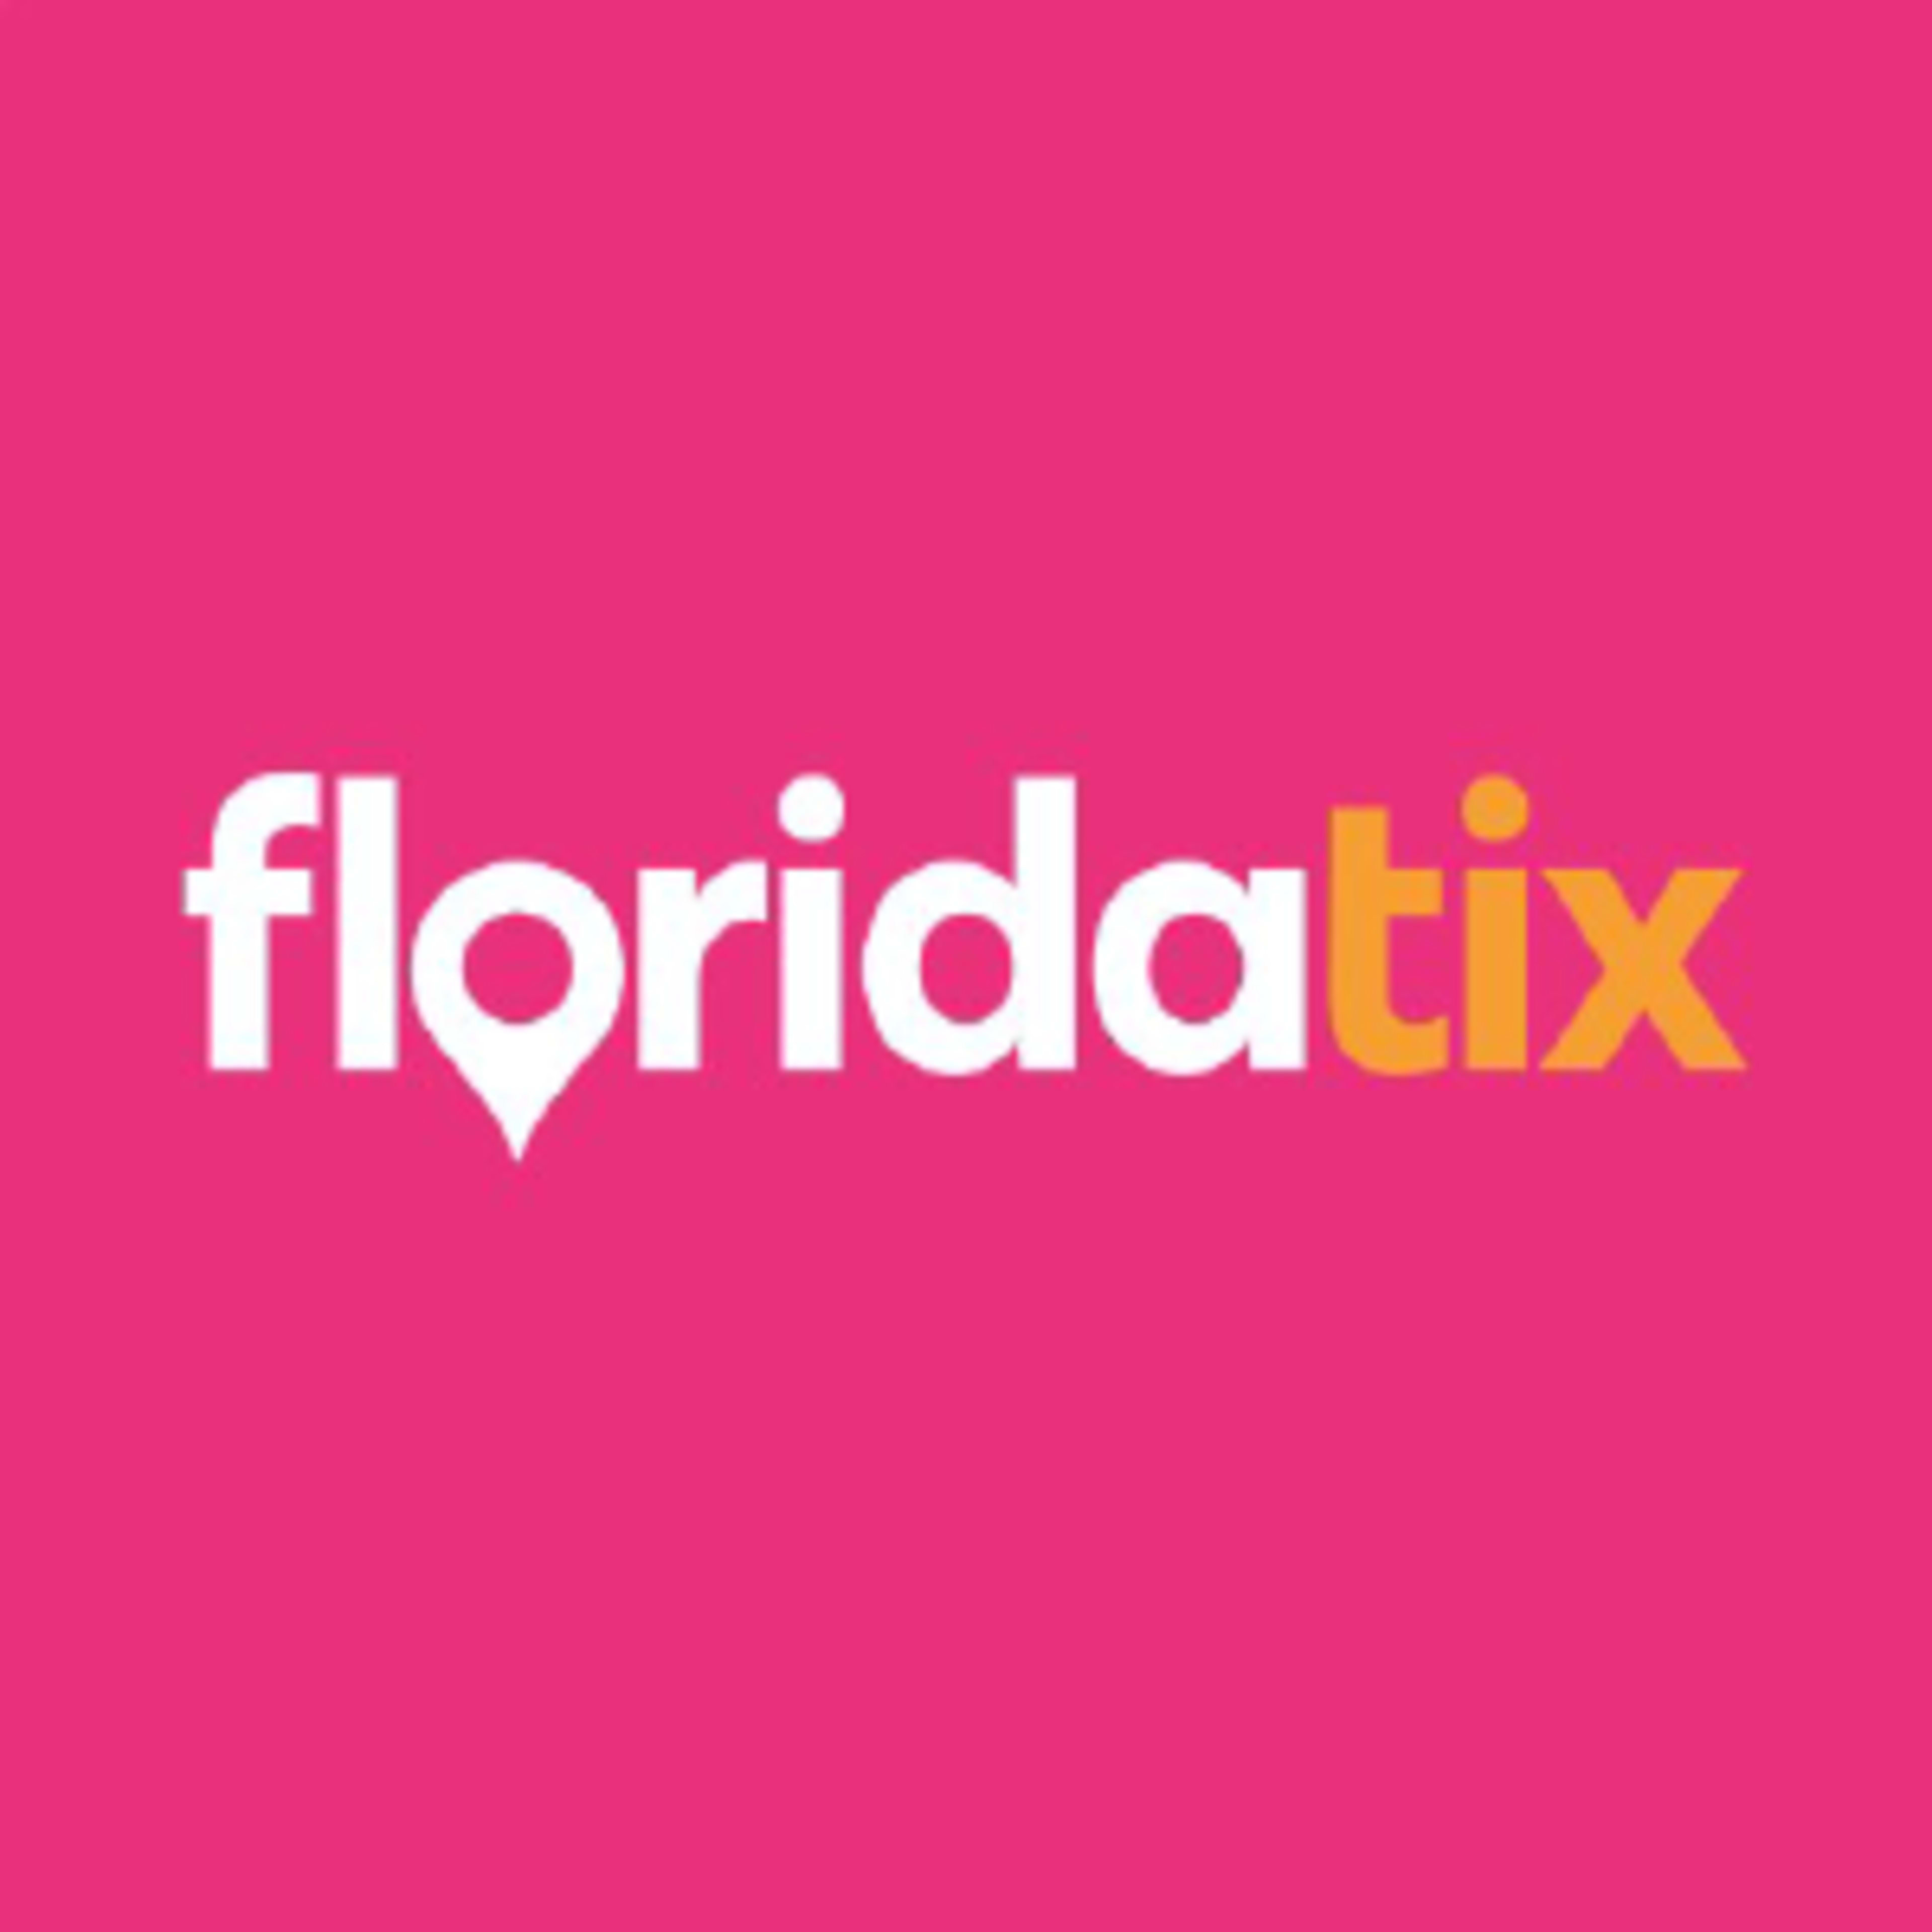 Florida TixCode